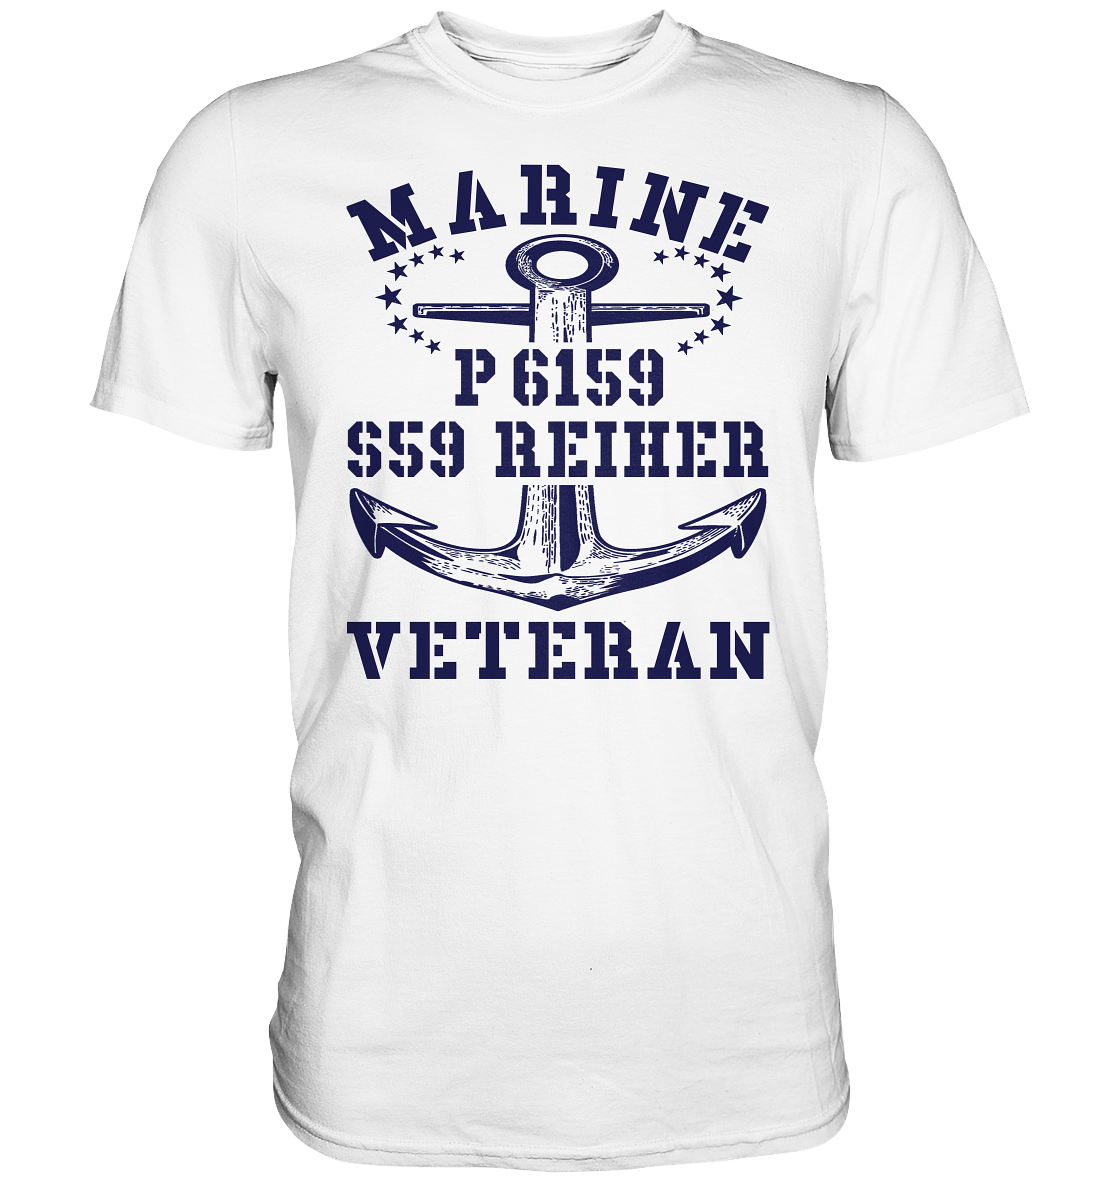 P6159 S59 REIHER Marine Veteran - Premium Shirt